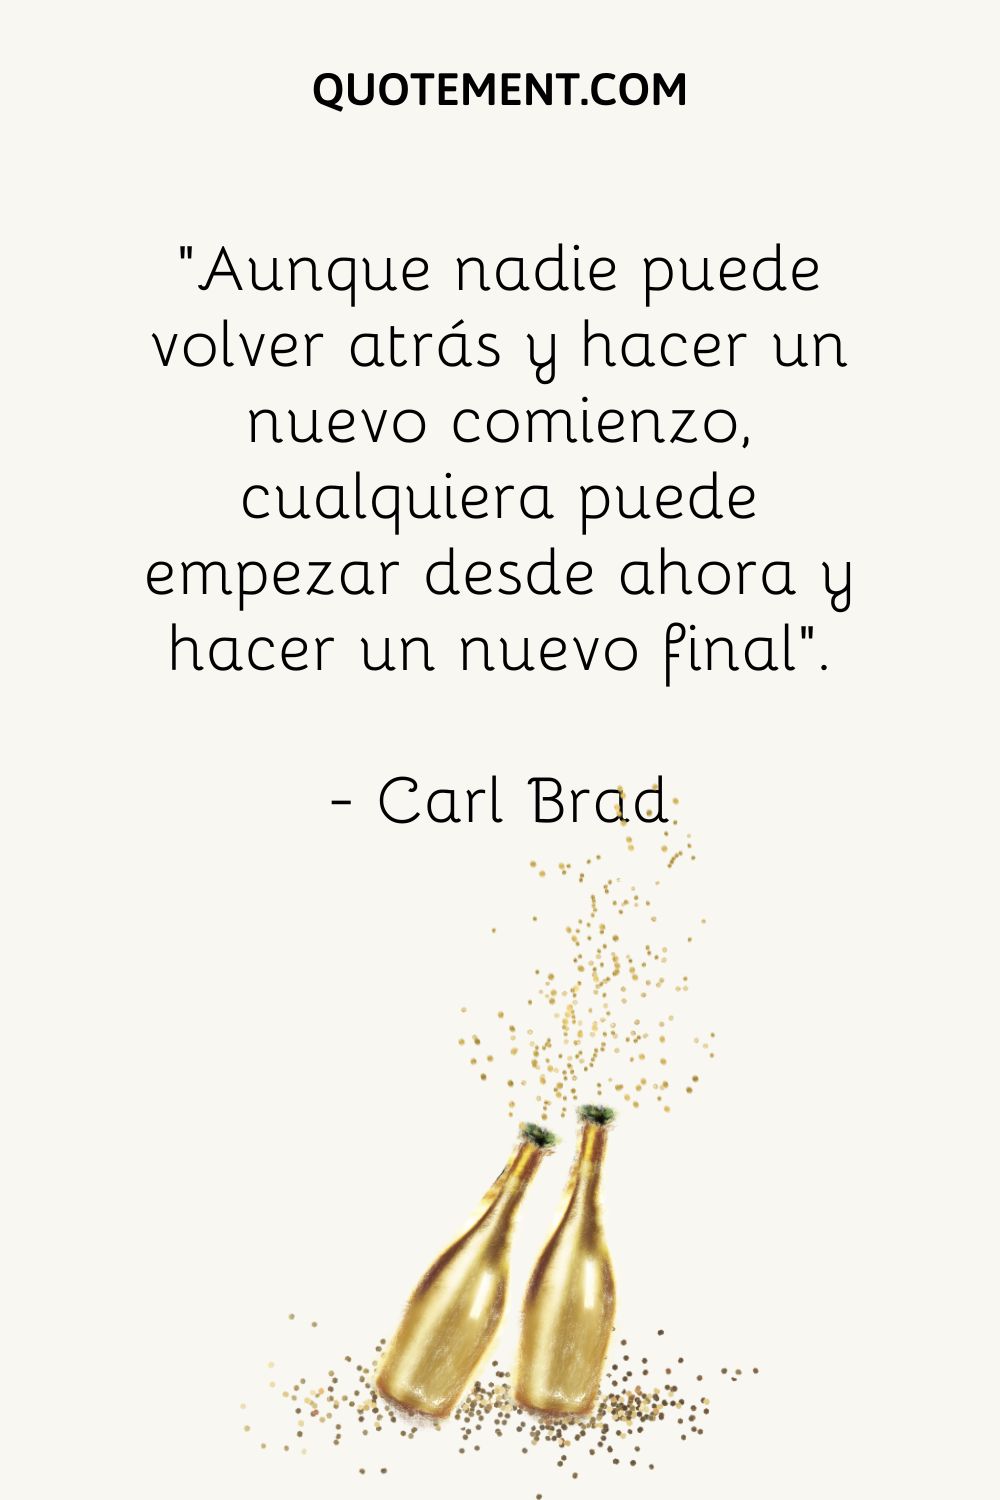 "Aunque nadie puede volver atrás y empezar de nuevo, cualquiera puede empezar desde ahora y tener un final nuevo". - Carl Brad